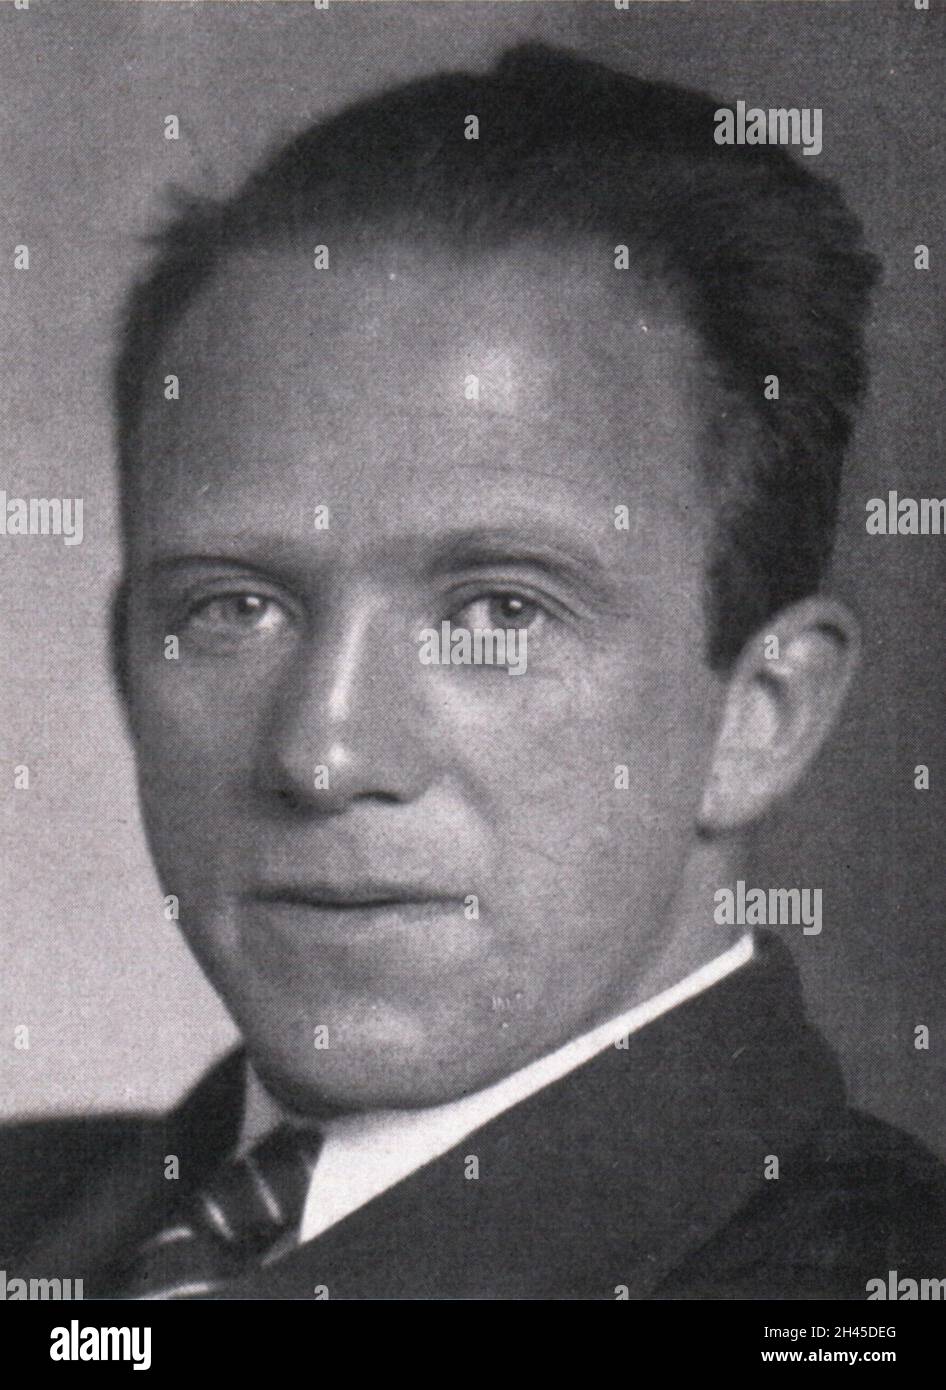 Il fisico teorico Werner Heisenberg, autore del famoso principio di incertezza Heisenberg Foto Stock